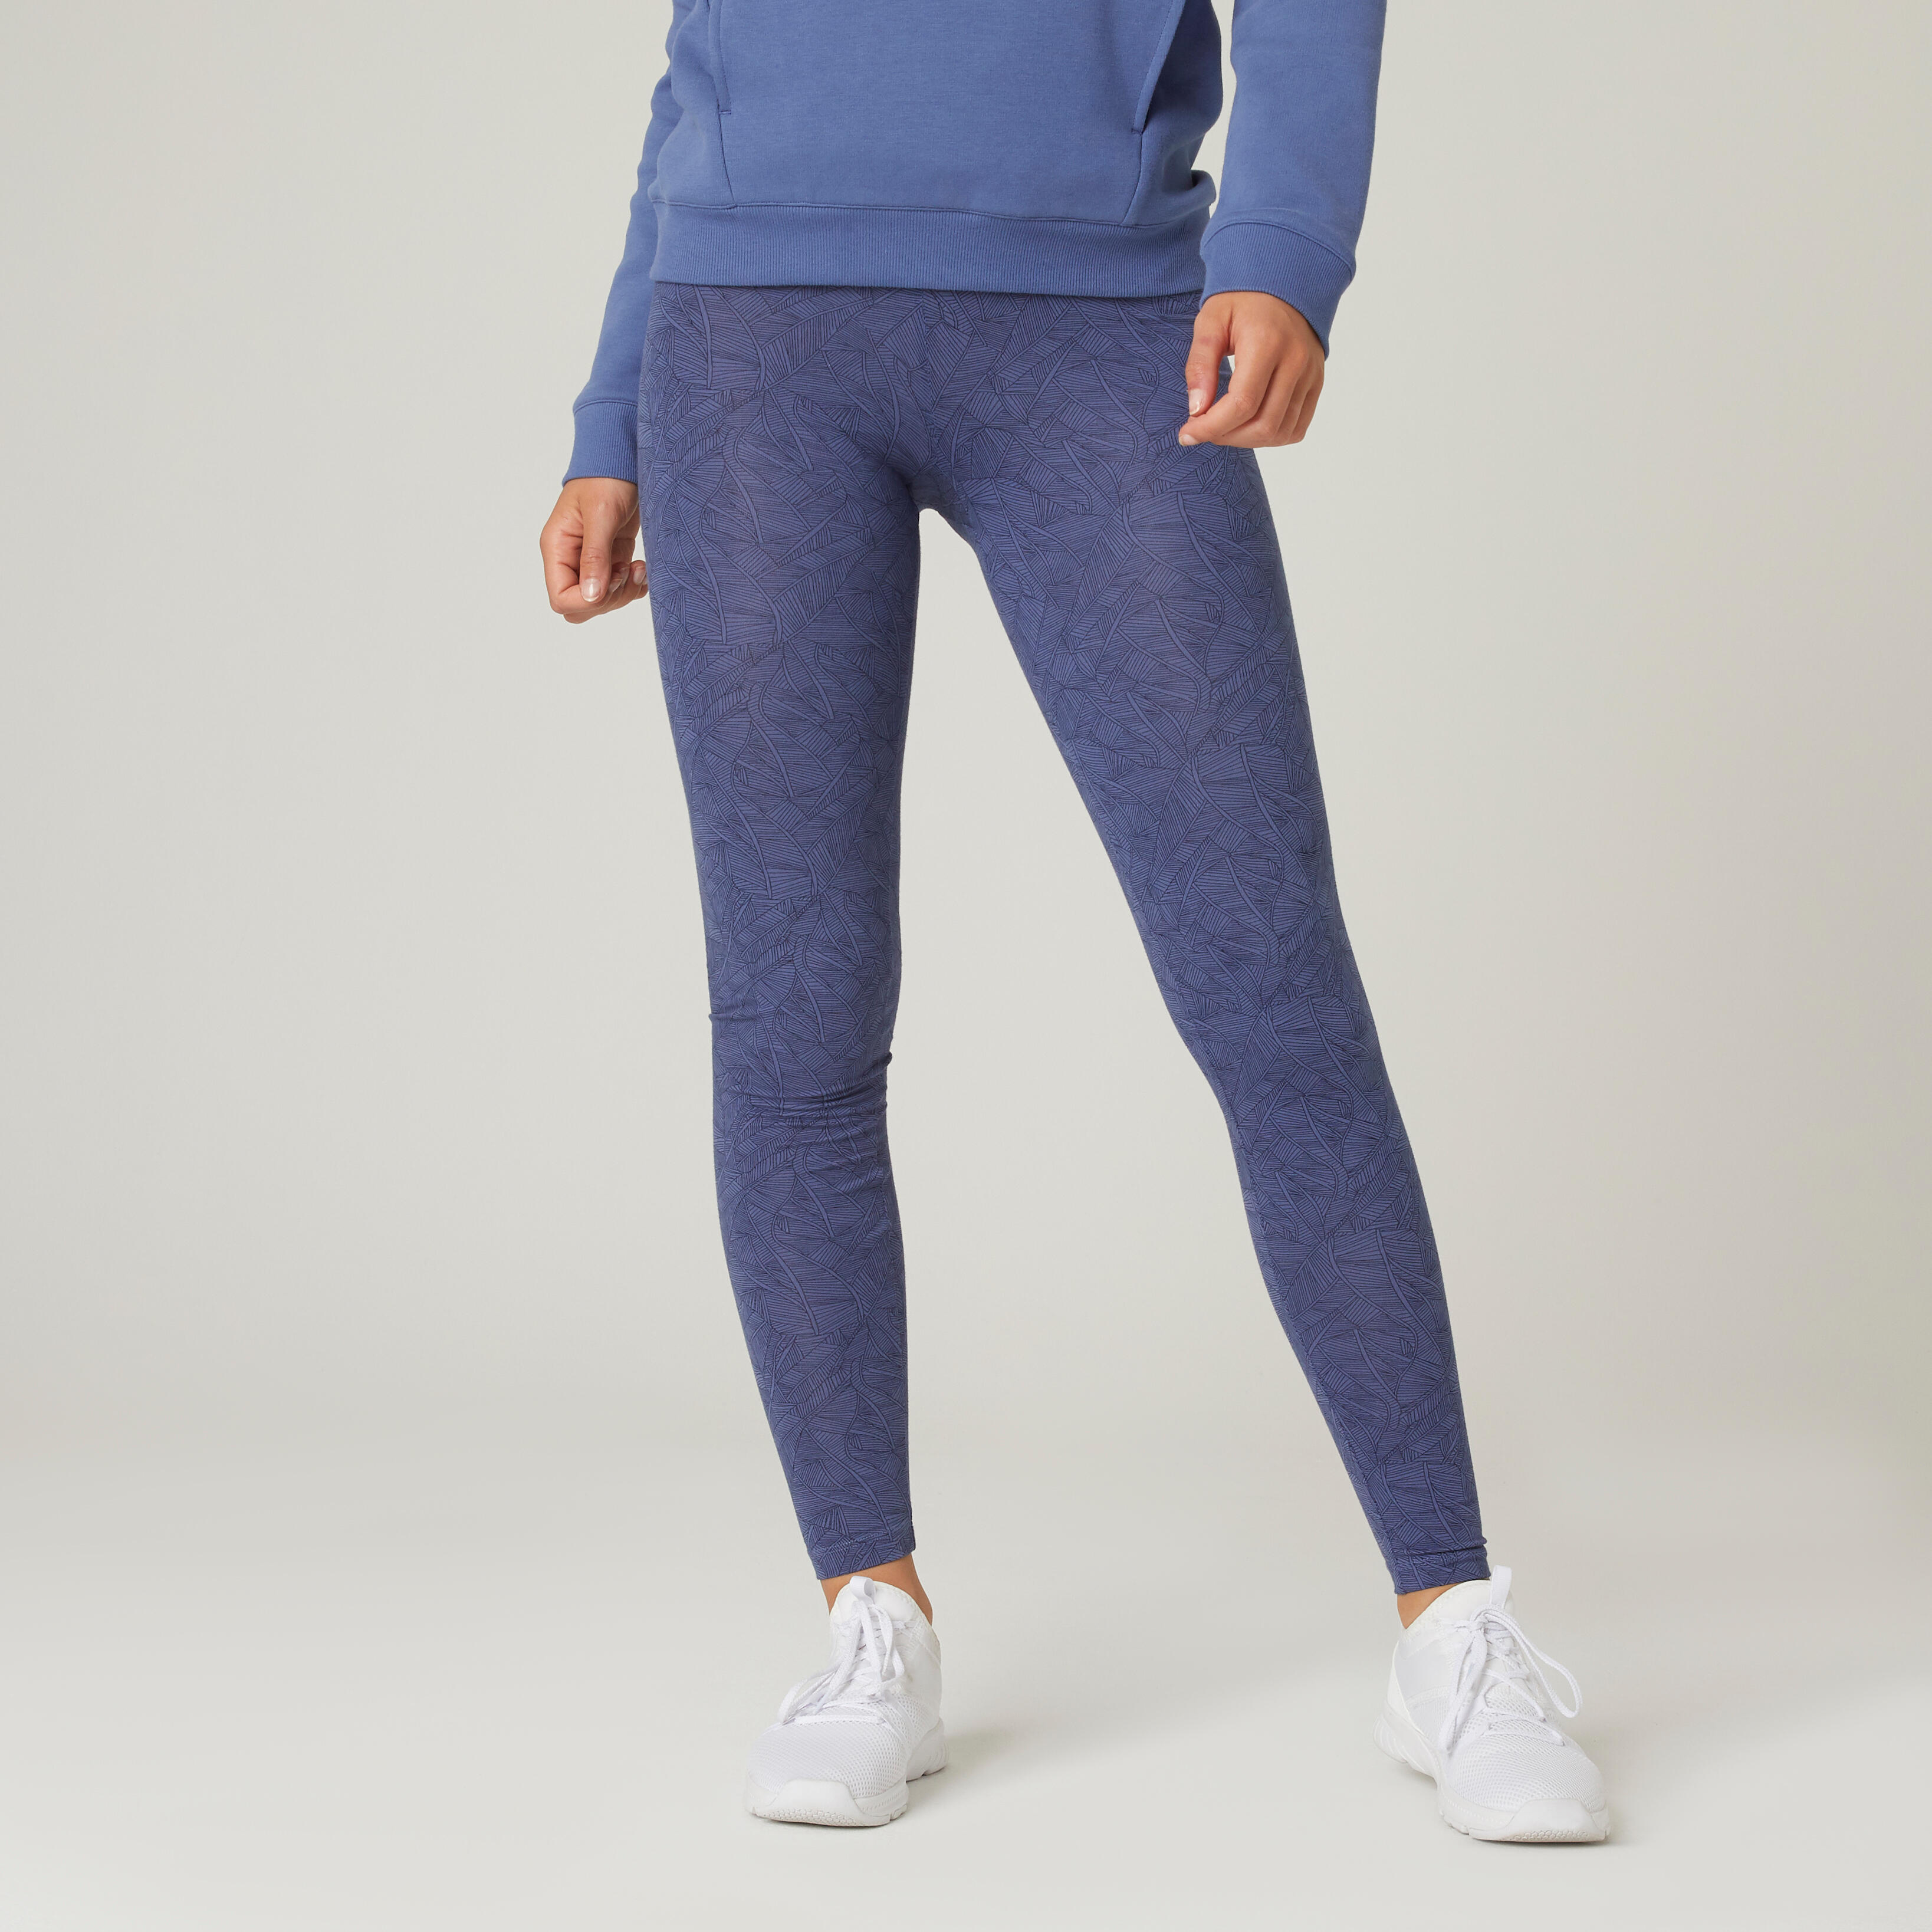 PIA Blue Leggings - TIYE the coolest sportswear & gym apparel